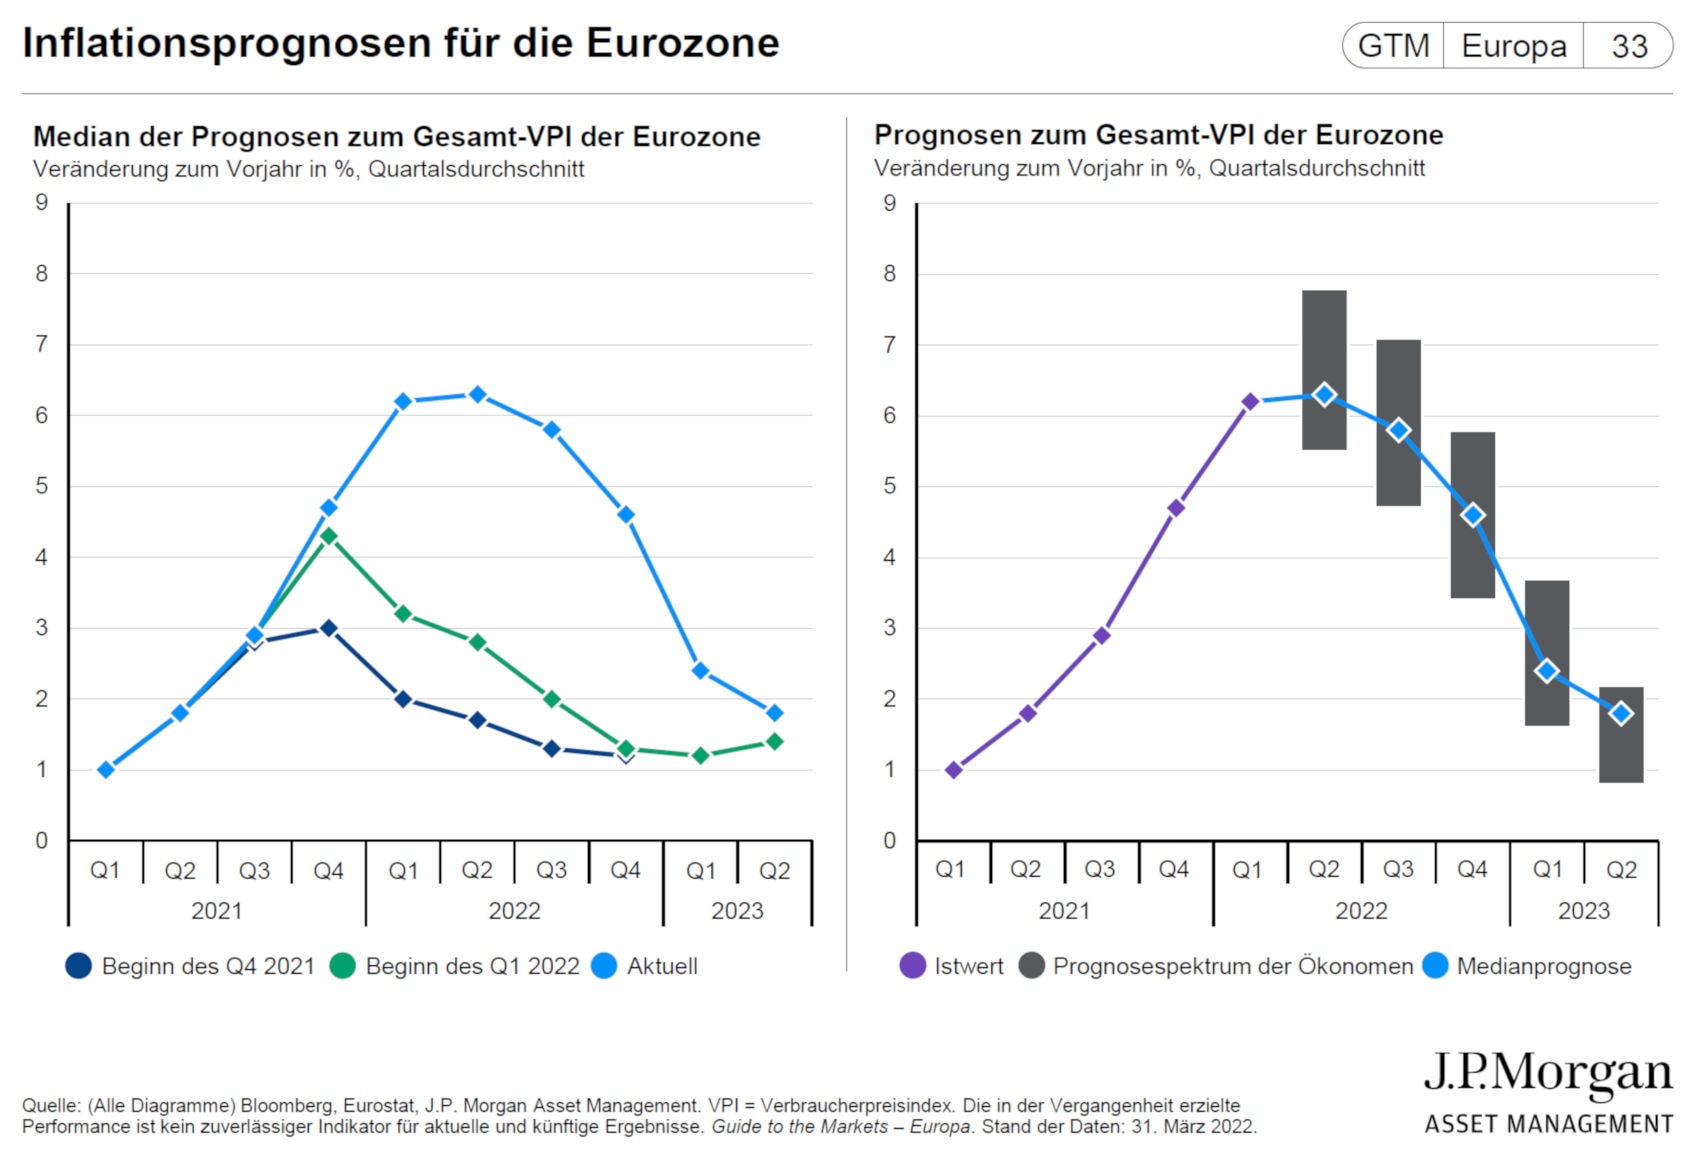 Inflationsprognose für die Eurozone